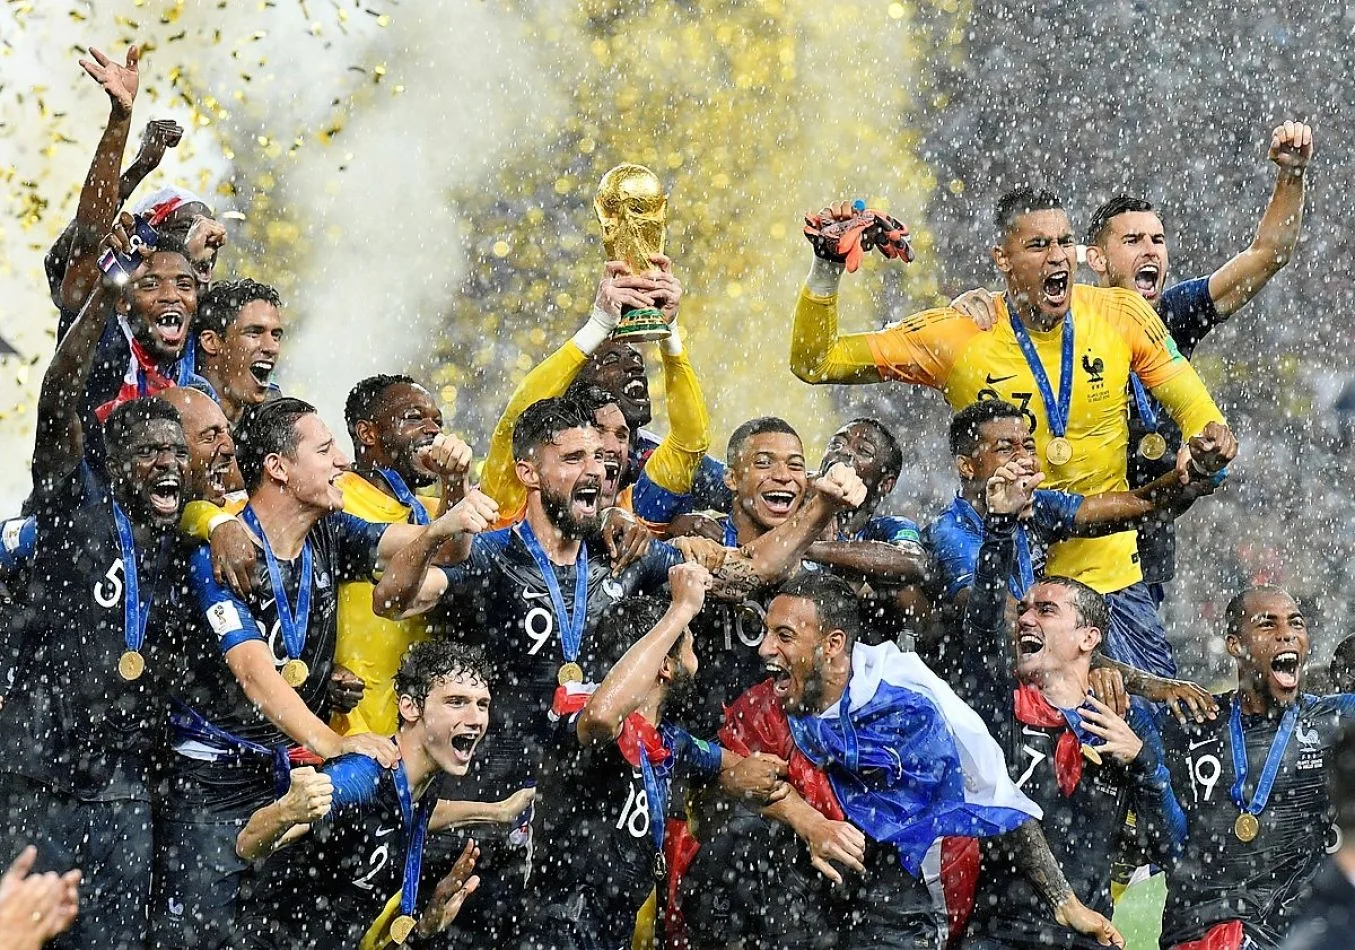 La seleccion francesa es campeona mundial de fútbol.